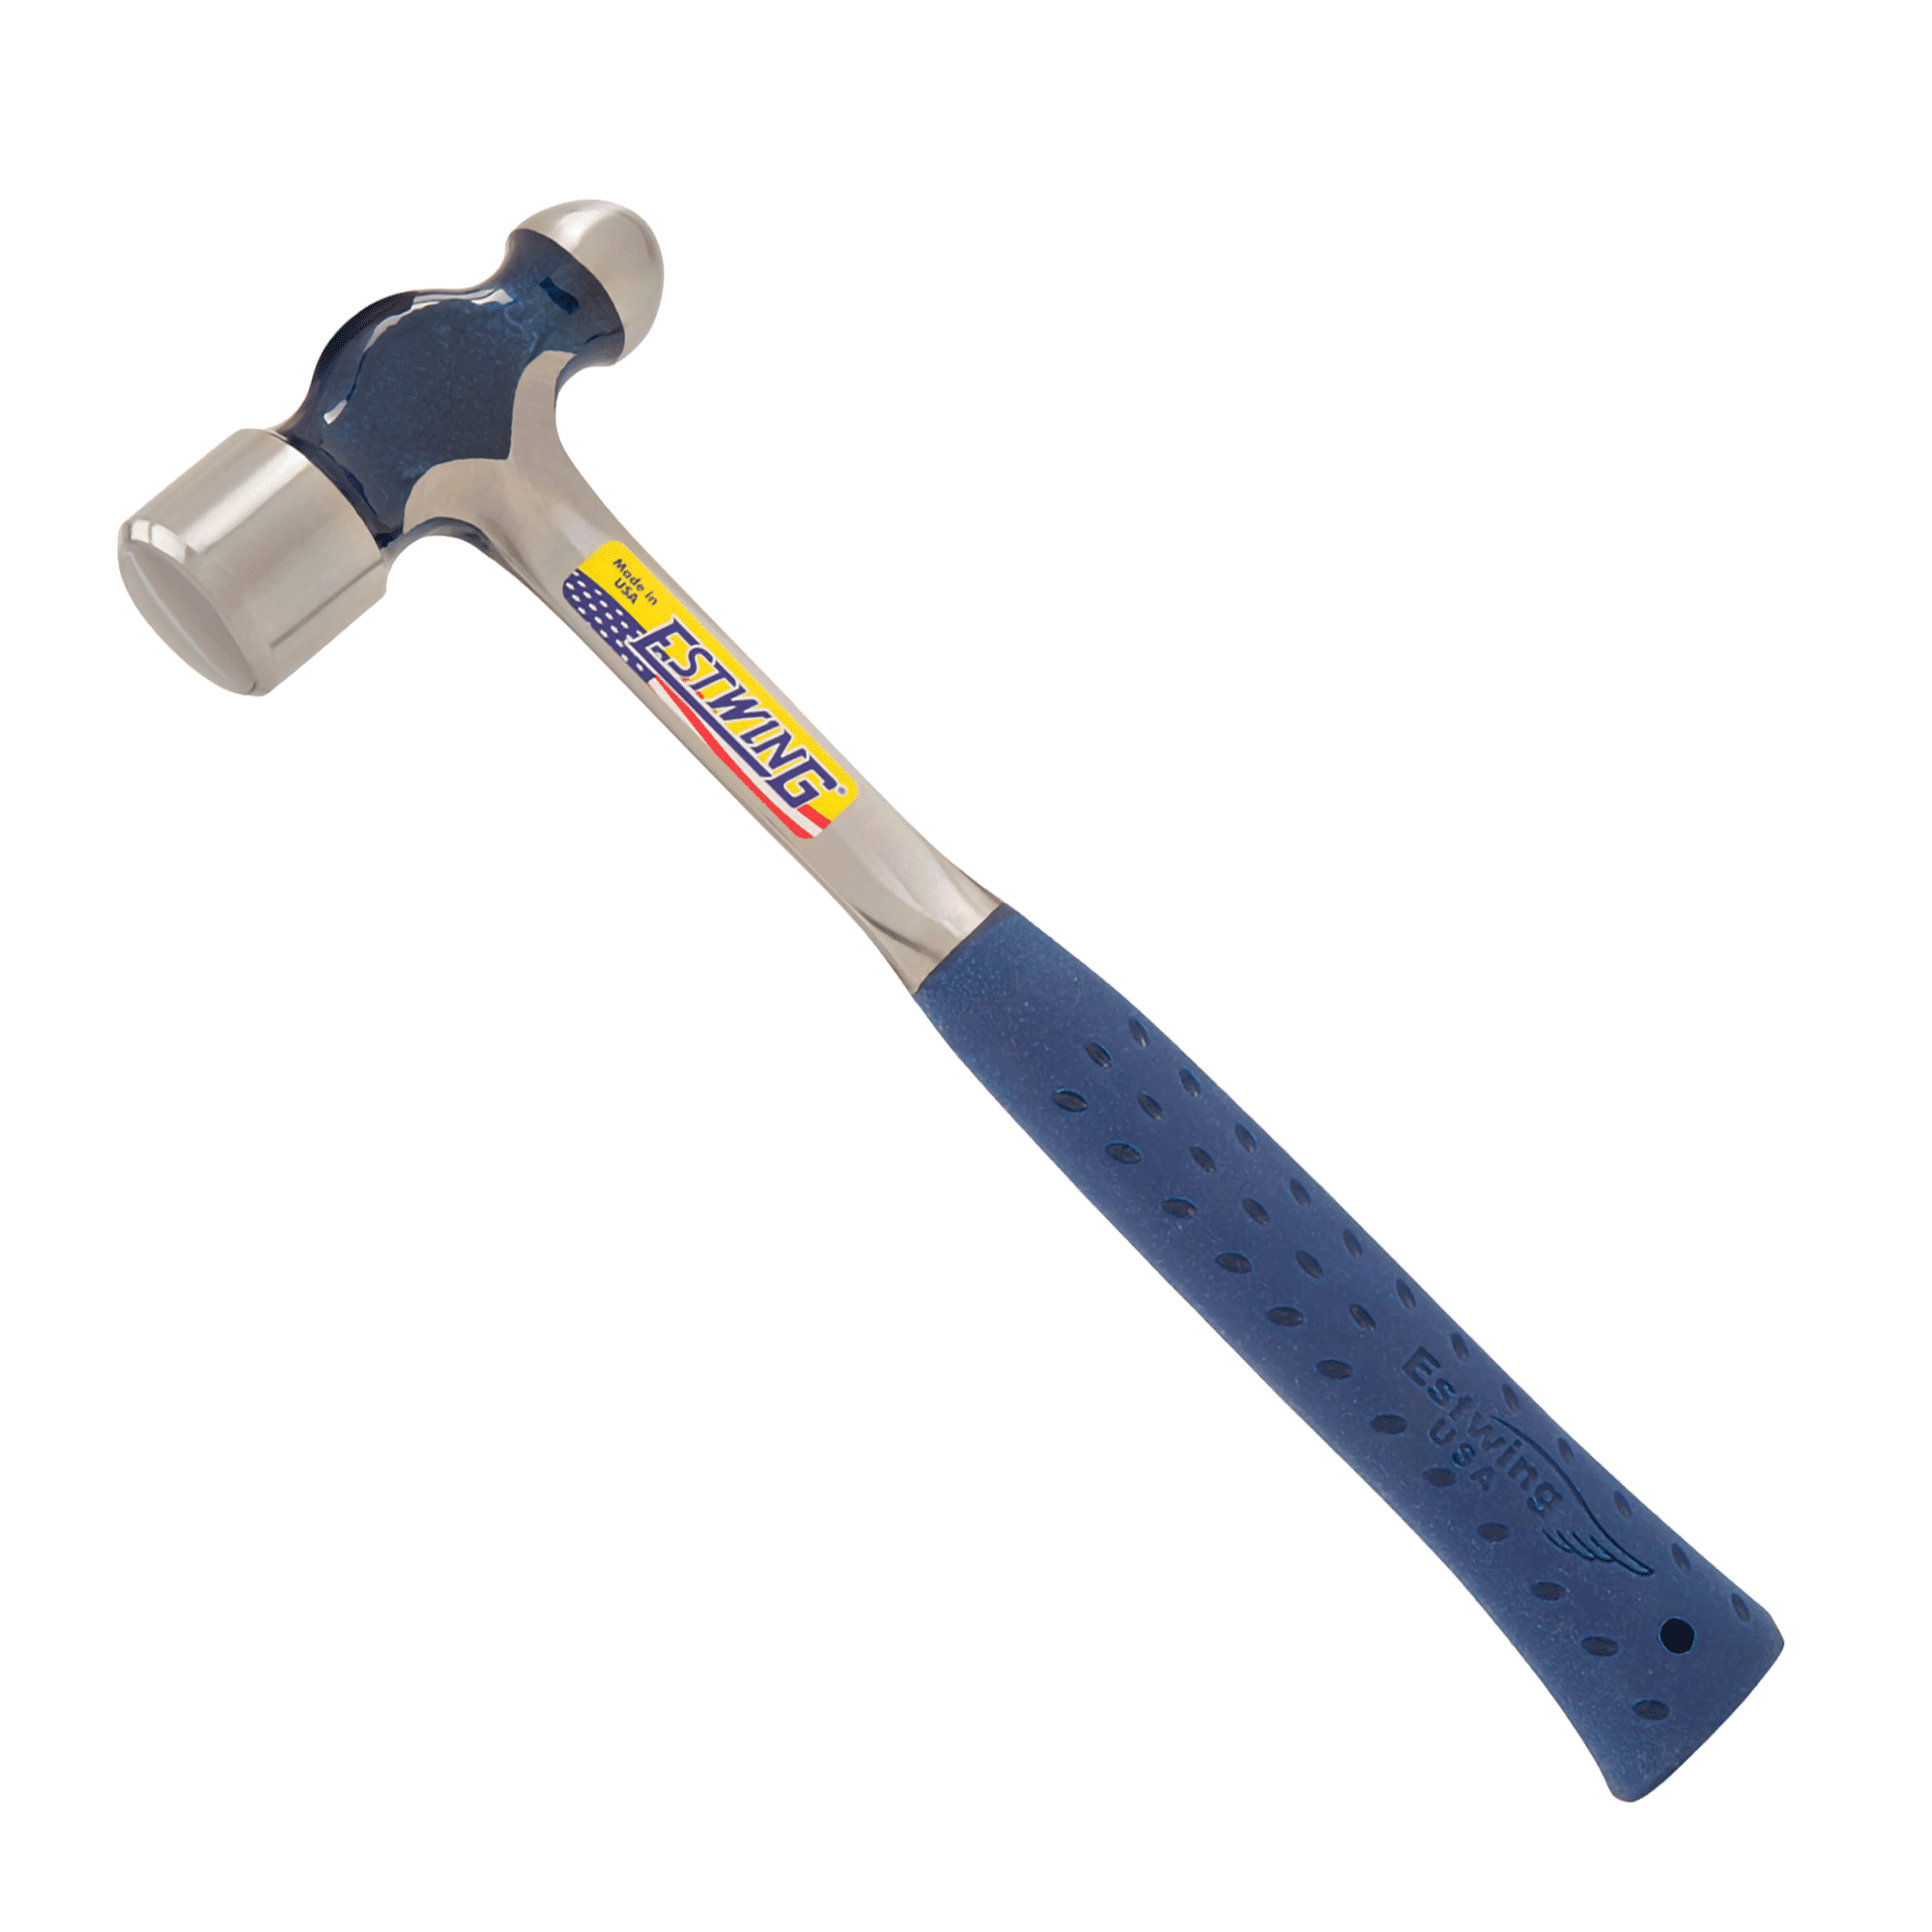 24 oz Steel Ball Peen Hammer